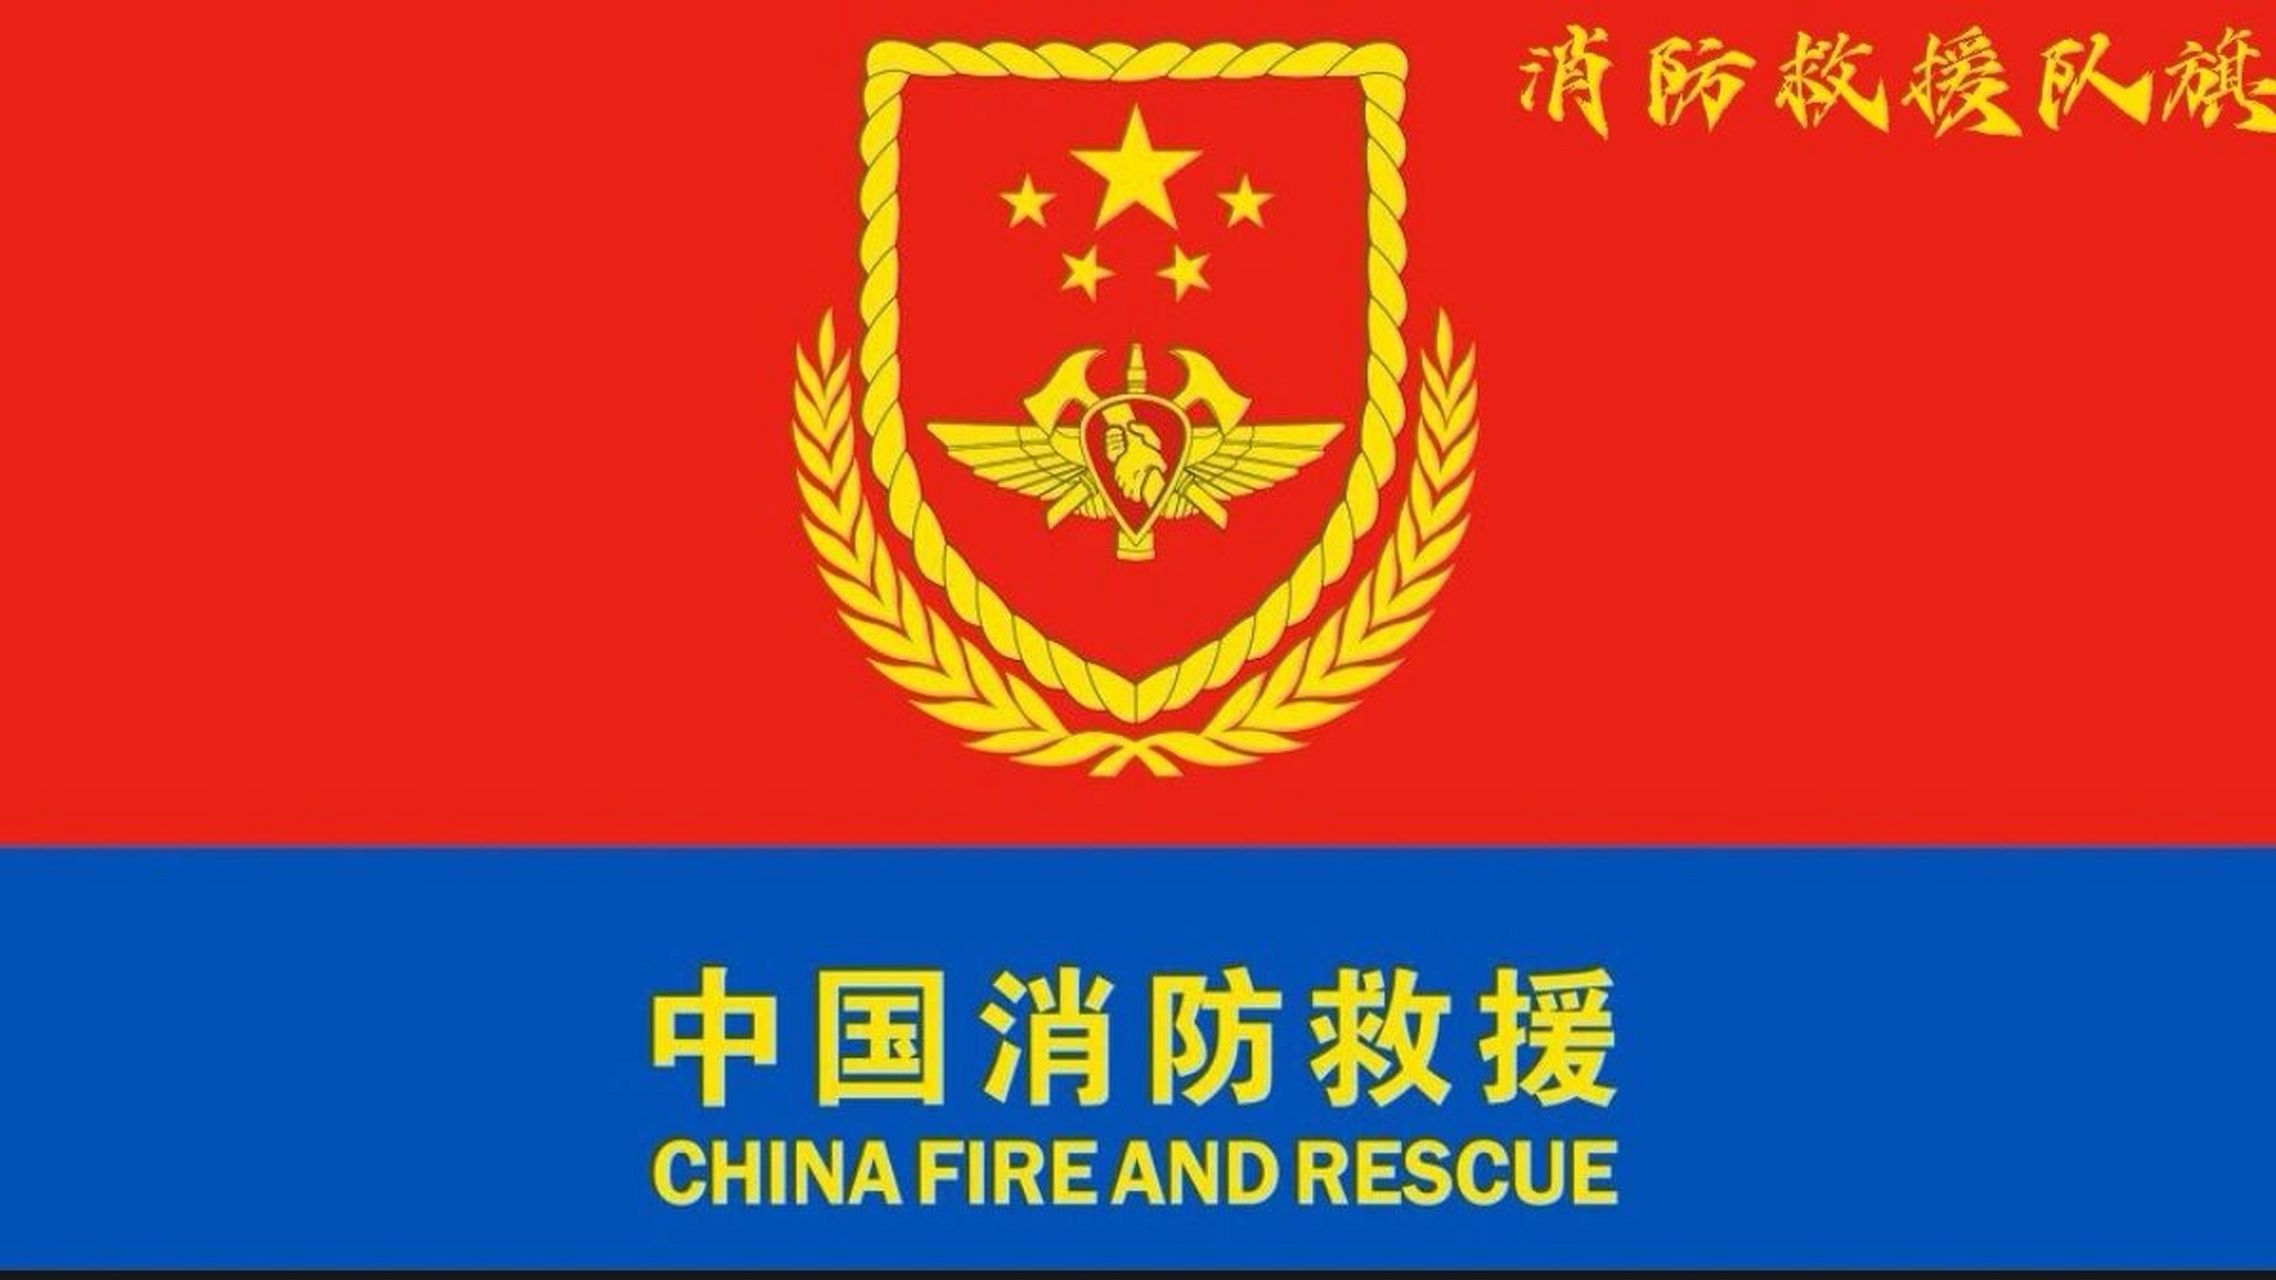 徽与中国之〖消防救援旗〗 名称:中国消防救援队旗 确定时间:2018年